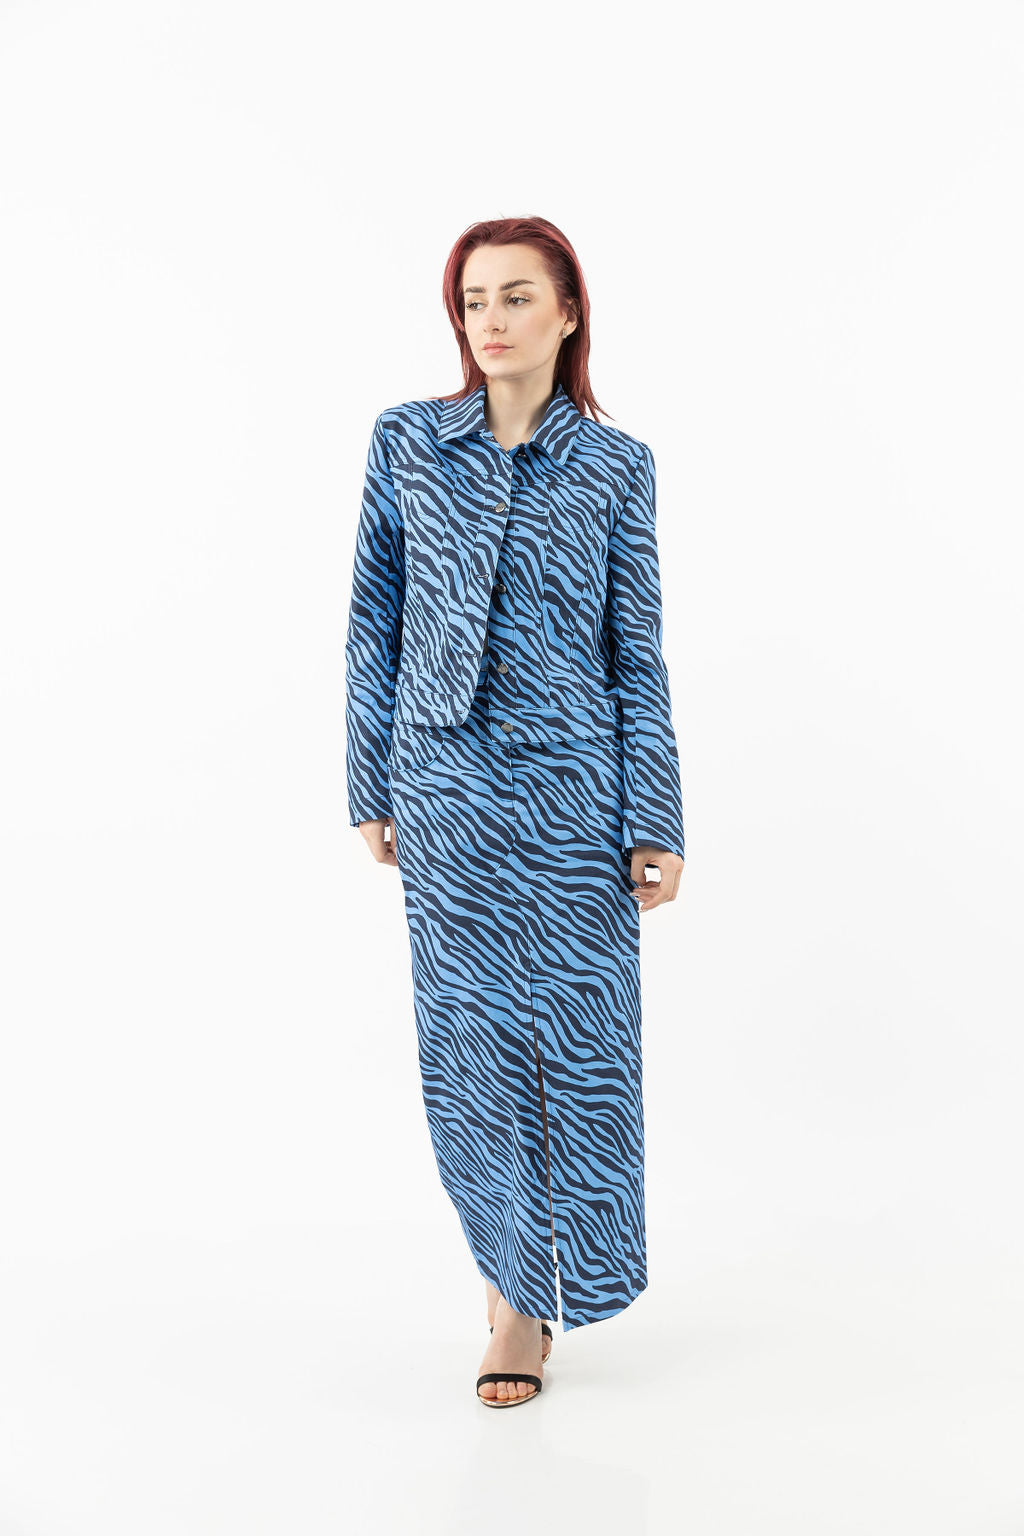 Cotton skirt in blue zebra print